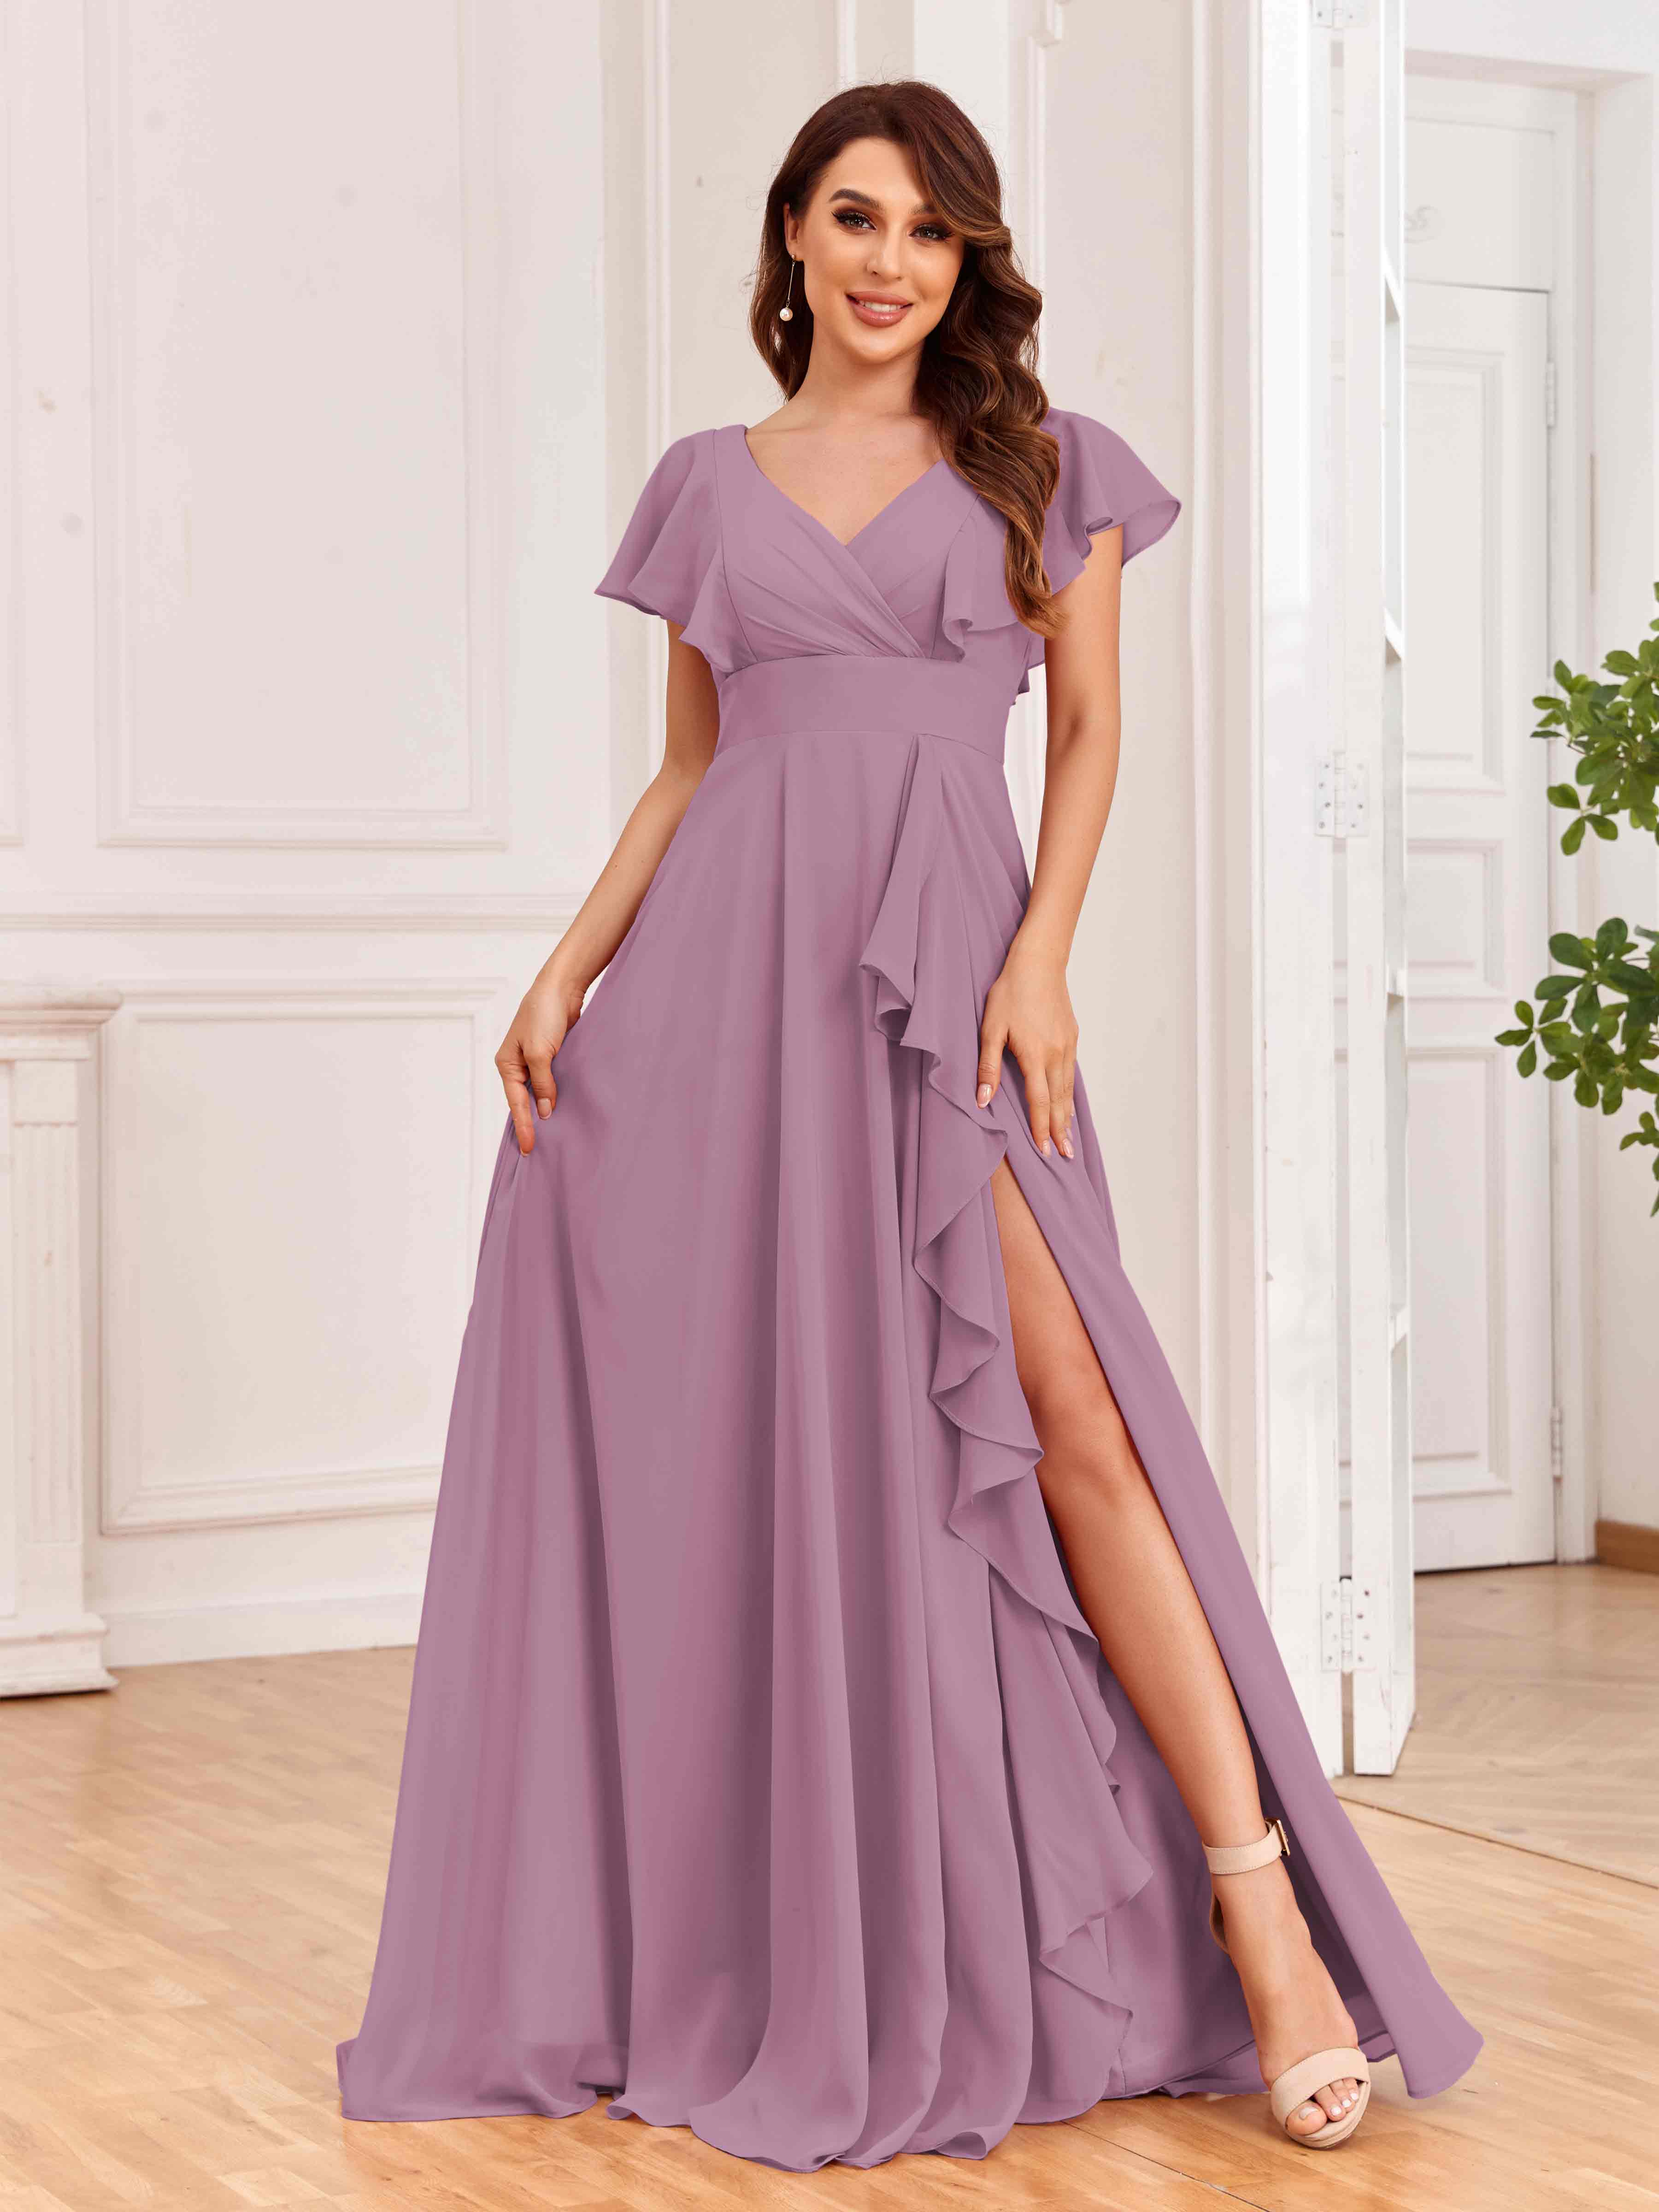 dusty purple dress